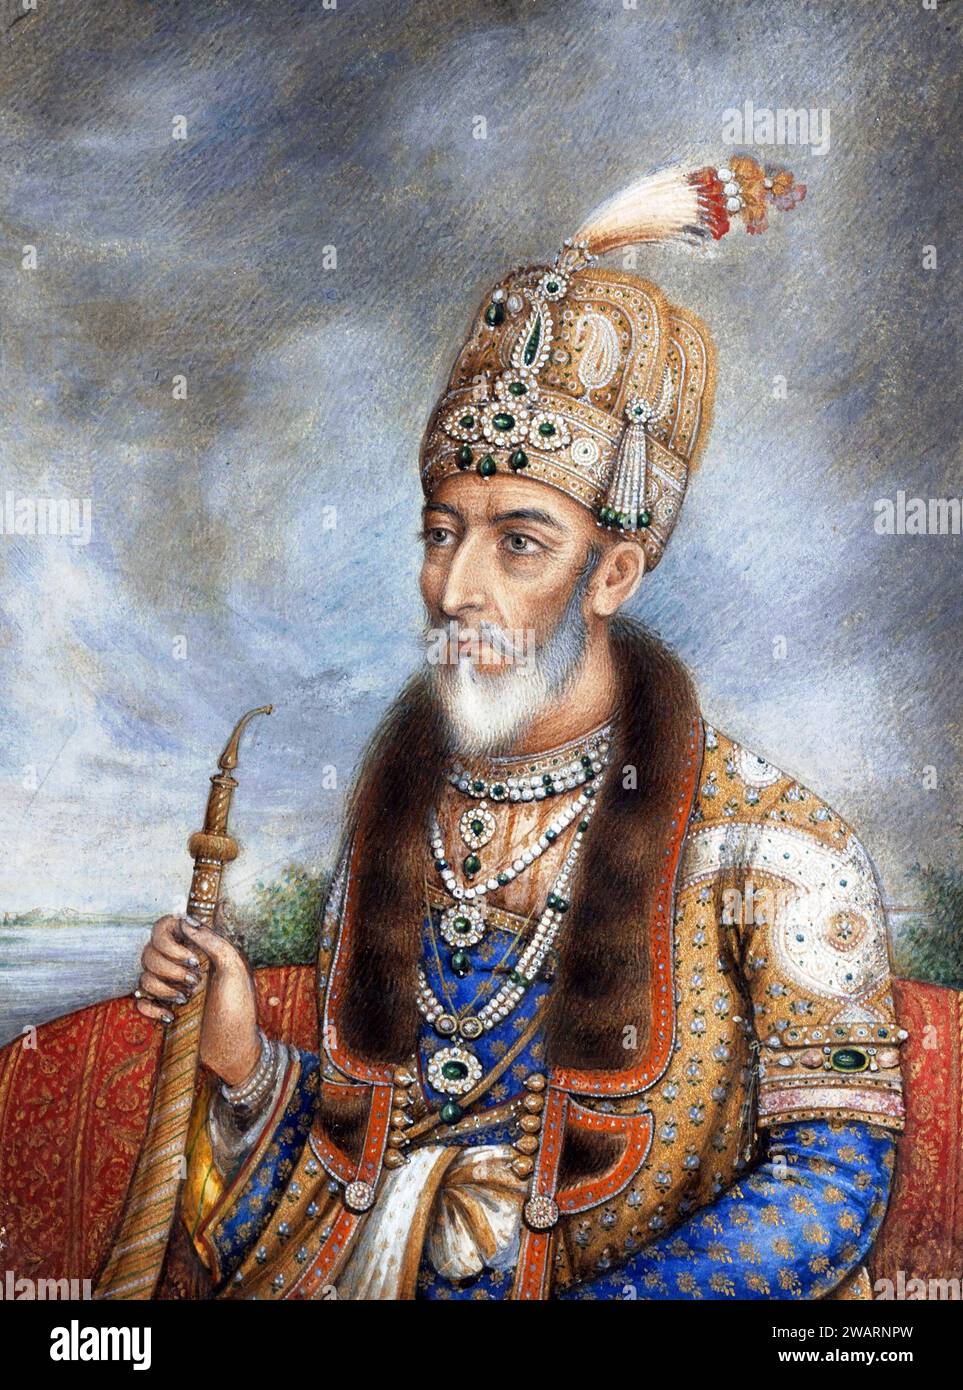 Bahadur Shah II. Ritratto del ventesimo e ultimo imperatore mughal e poeta urdu, Bahadur Shah II (Mirza Abu Zafar Siraj-ud-din Muhammad; 1775-1862), di solito indicato con il suo titolo poetico Bahadur Shah Zafar, c. 1850 Foto Stock